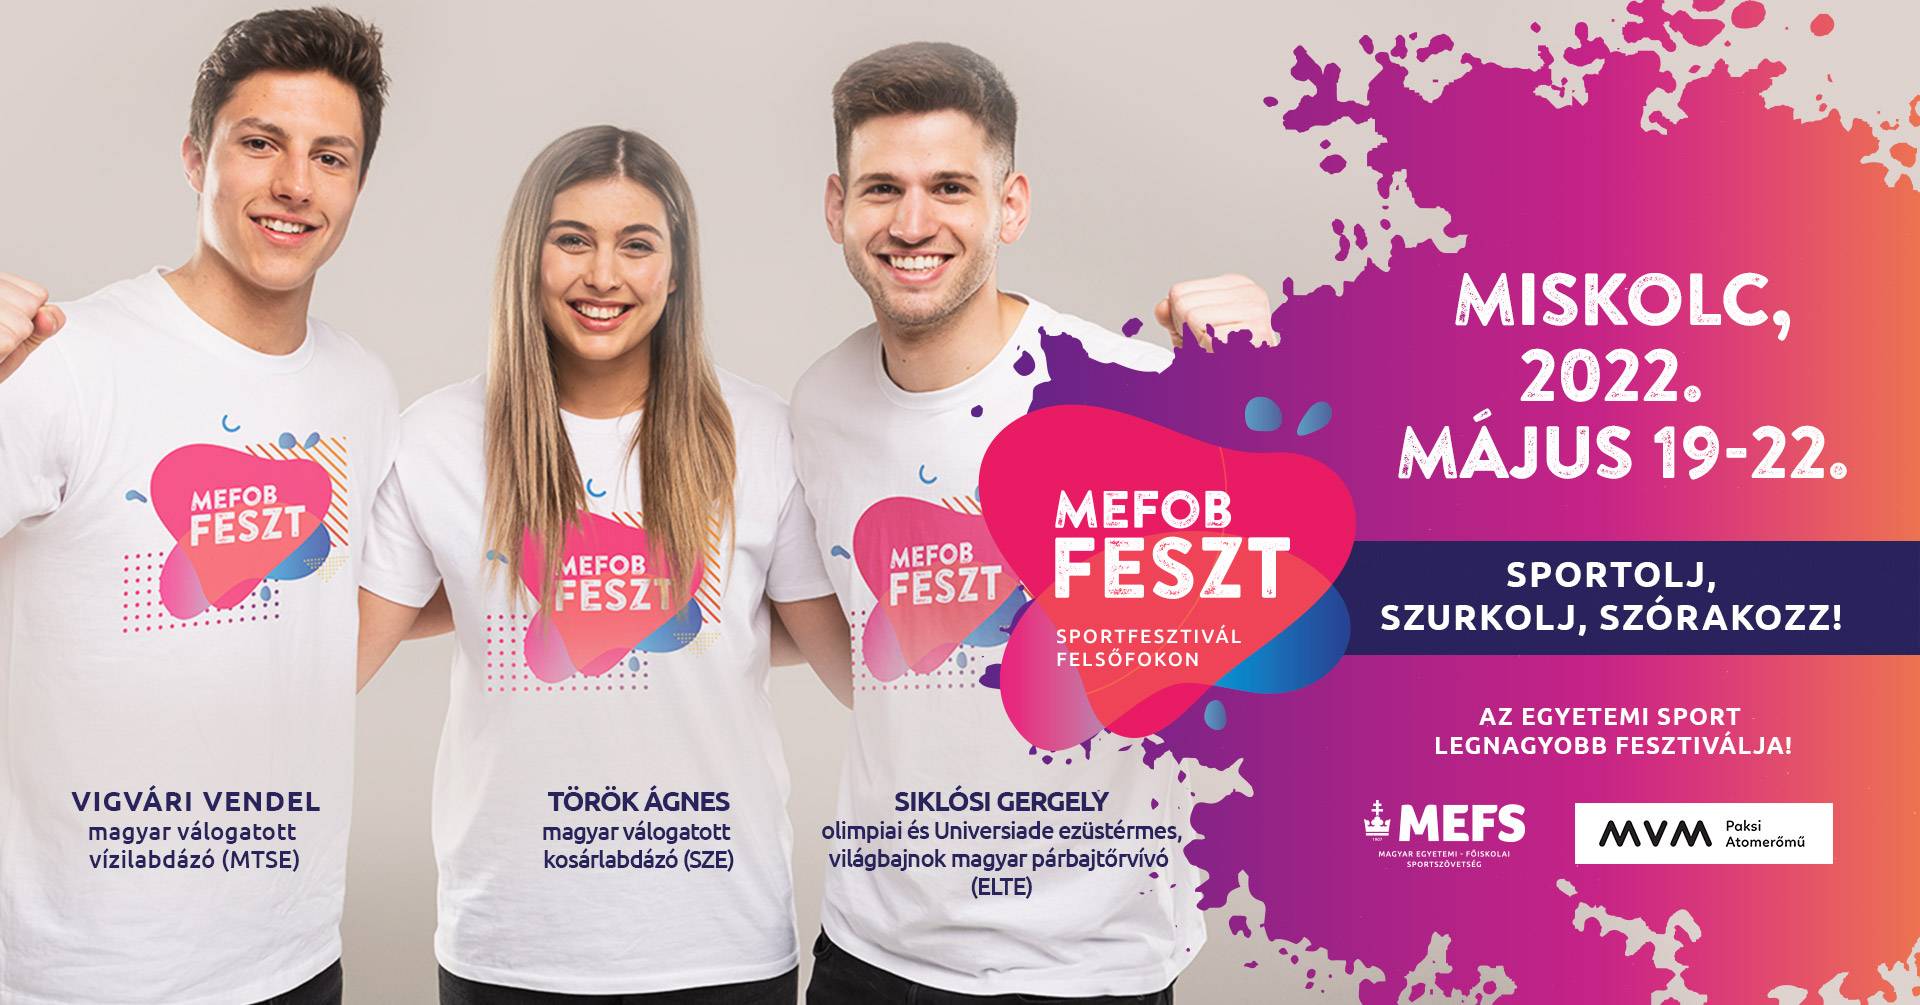 MEFOB FESZT 2022, sajtóközlemény